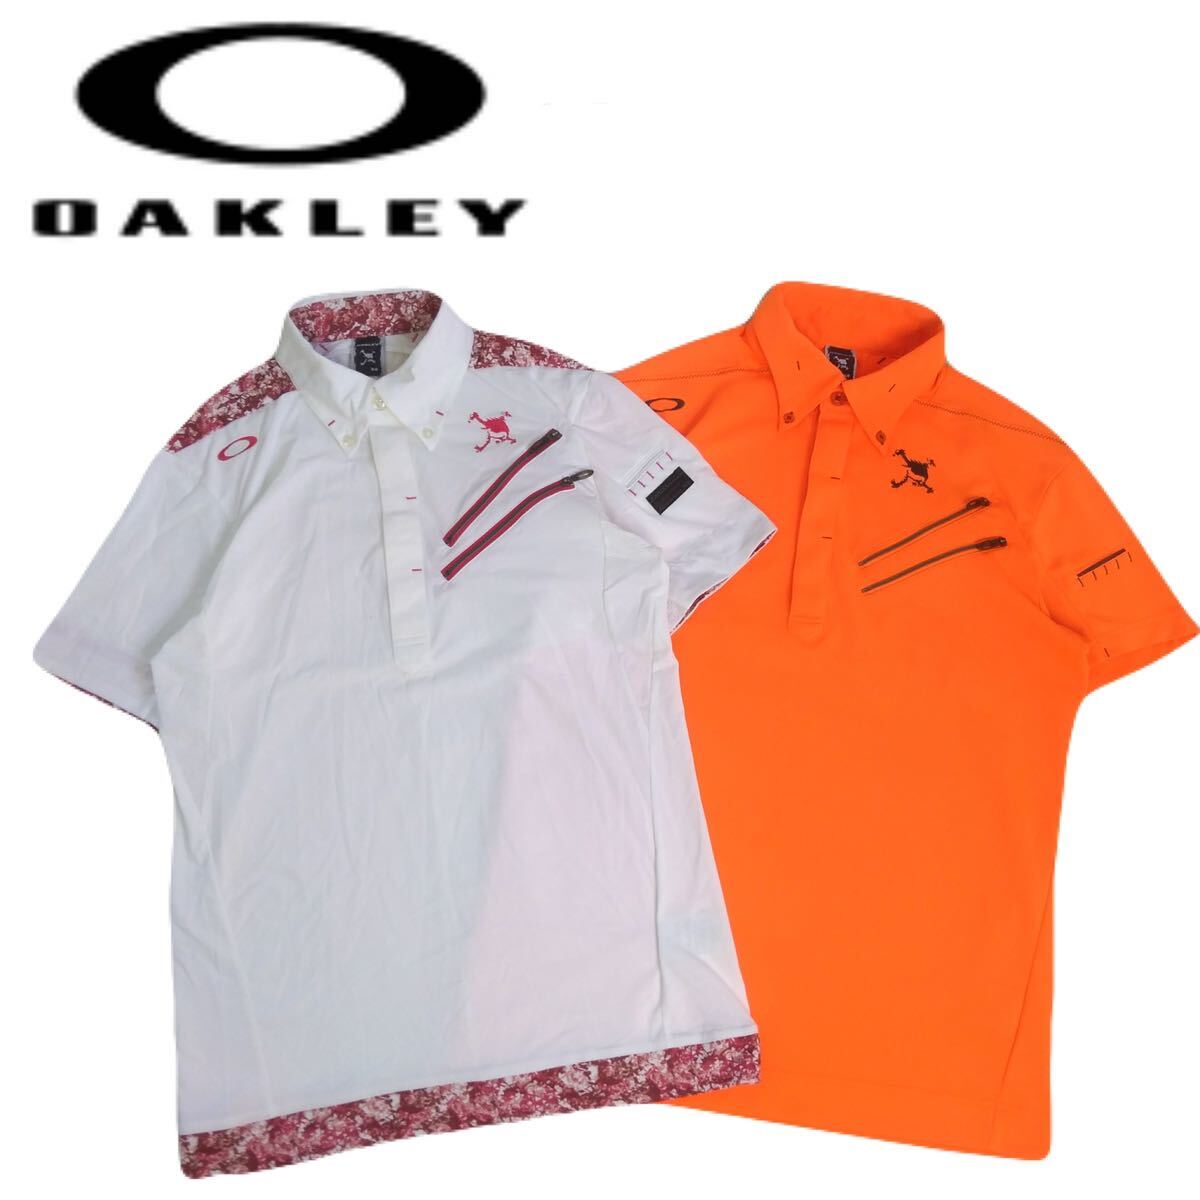  превосходный товар высший класс роскошный вышивка 2 пункт OAKLEY. вода скорость . стрейч переключатель общий рисунок Skull Logo рубашка-поло с коротким рукавом мужской M Oacley Golf одежда 2405109